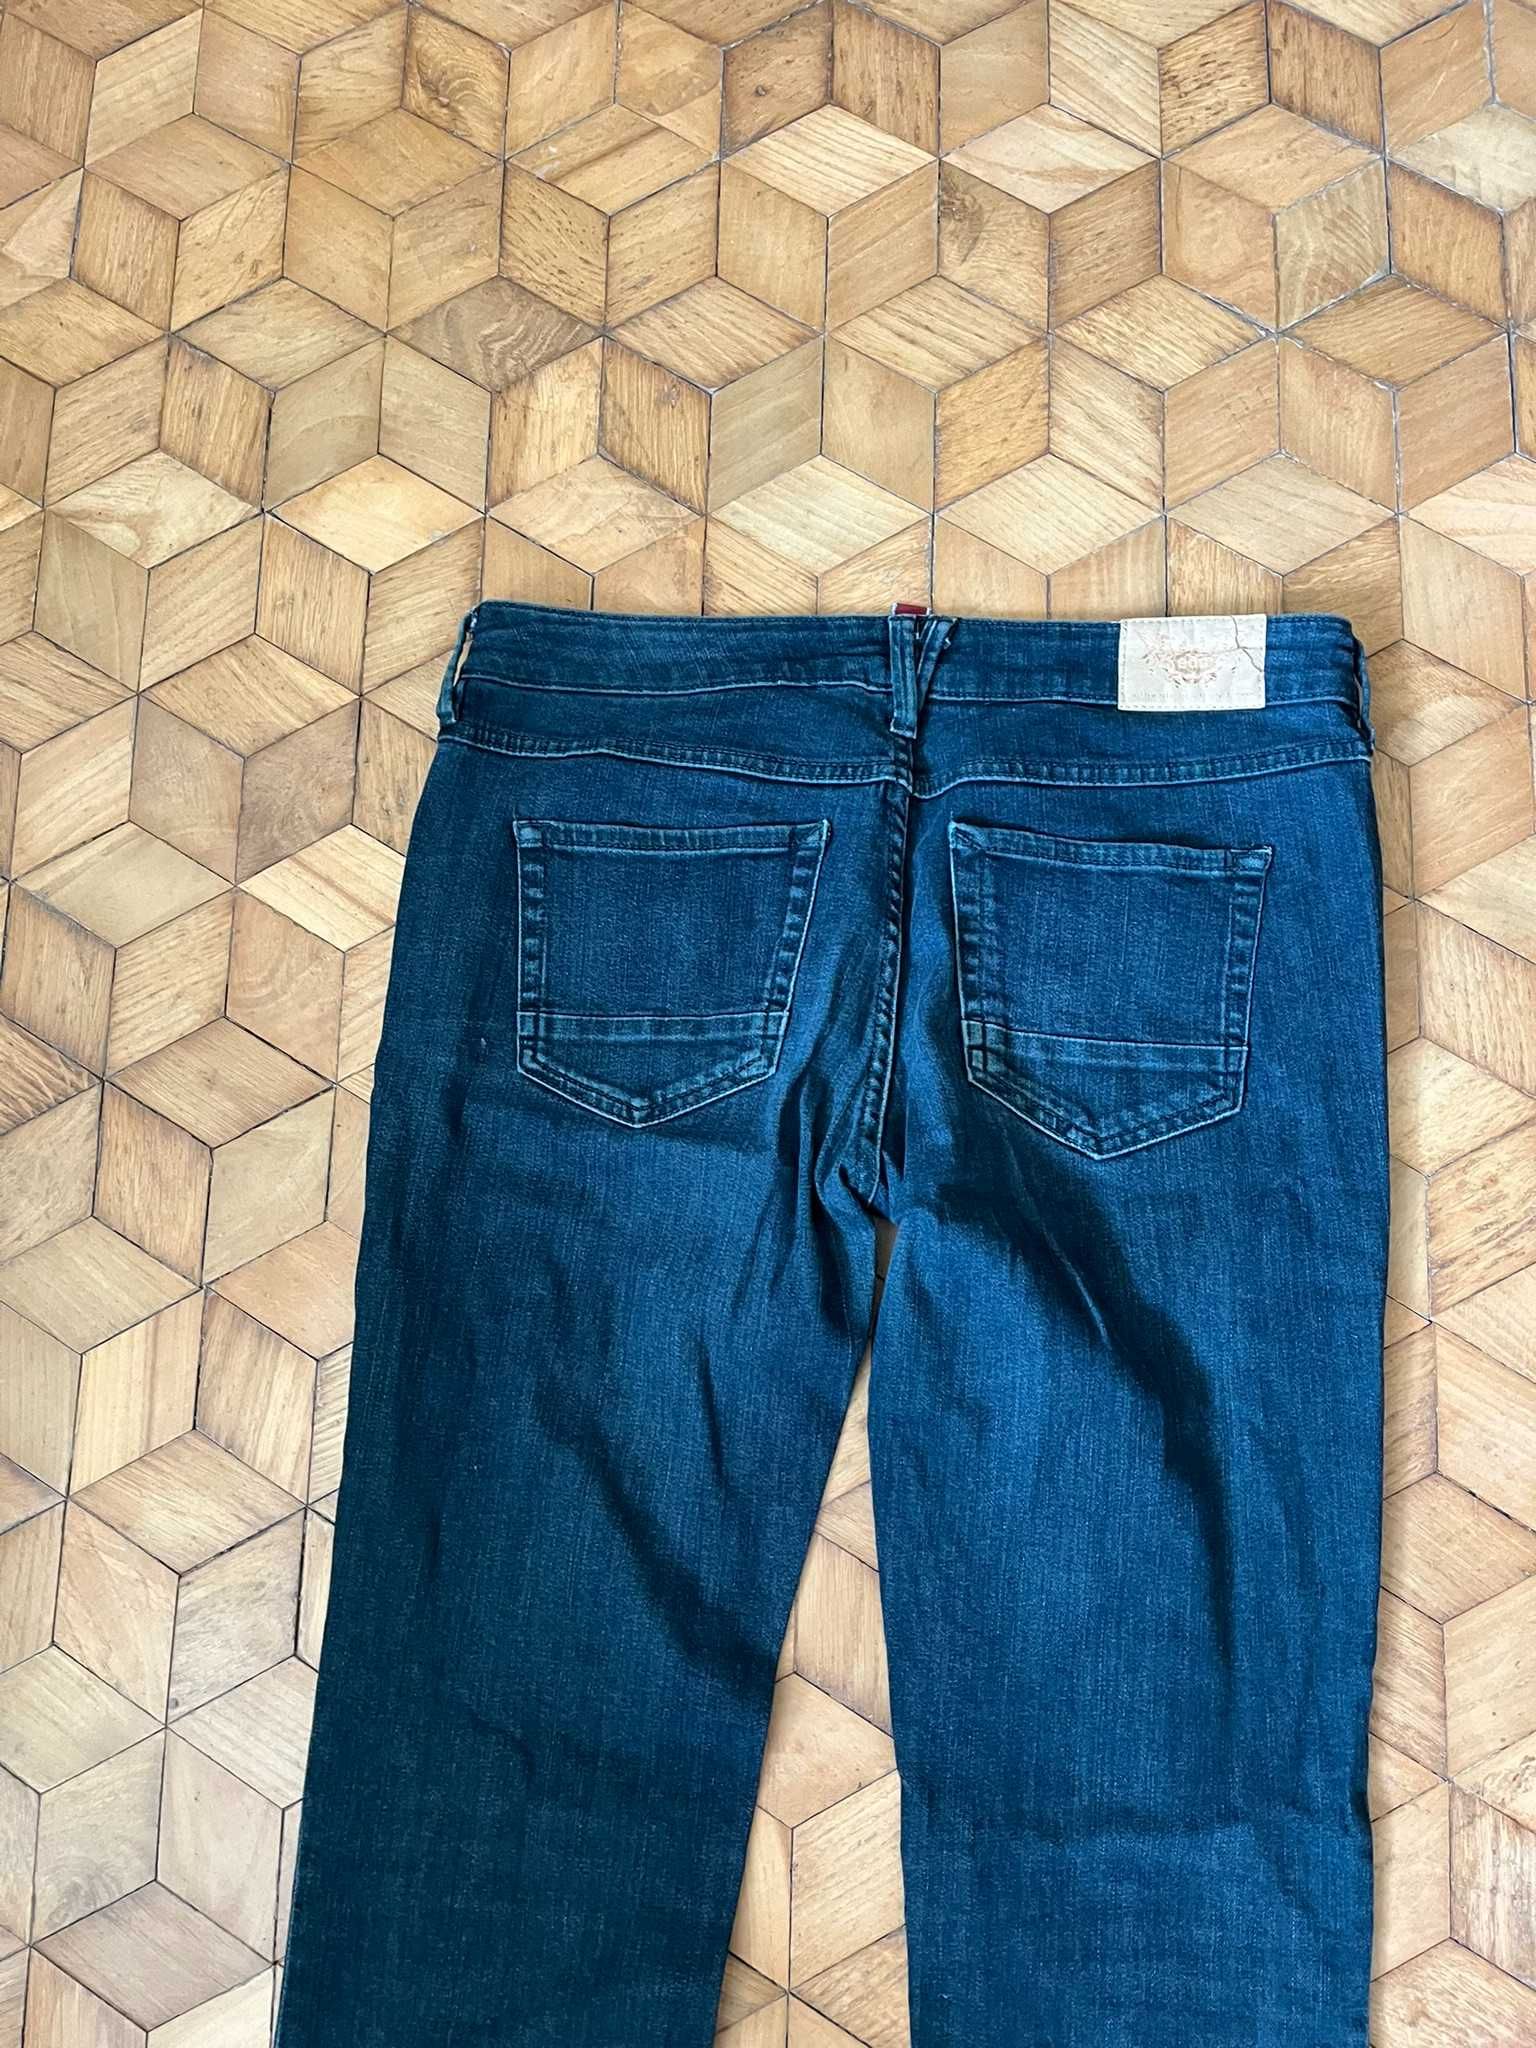 Spodnie jeansowe damskie Esprit 31/32 L